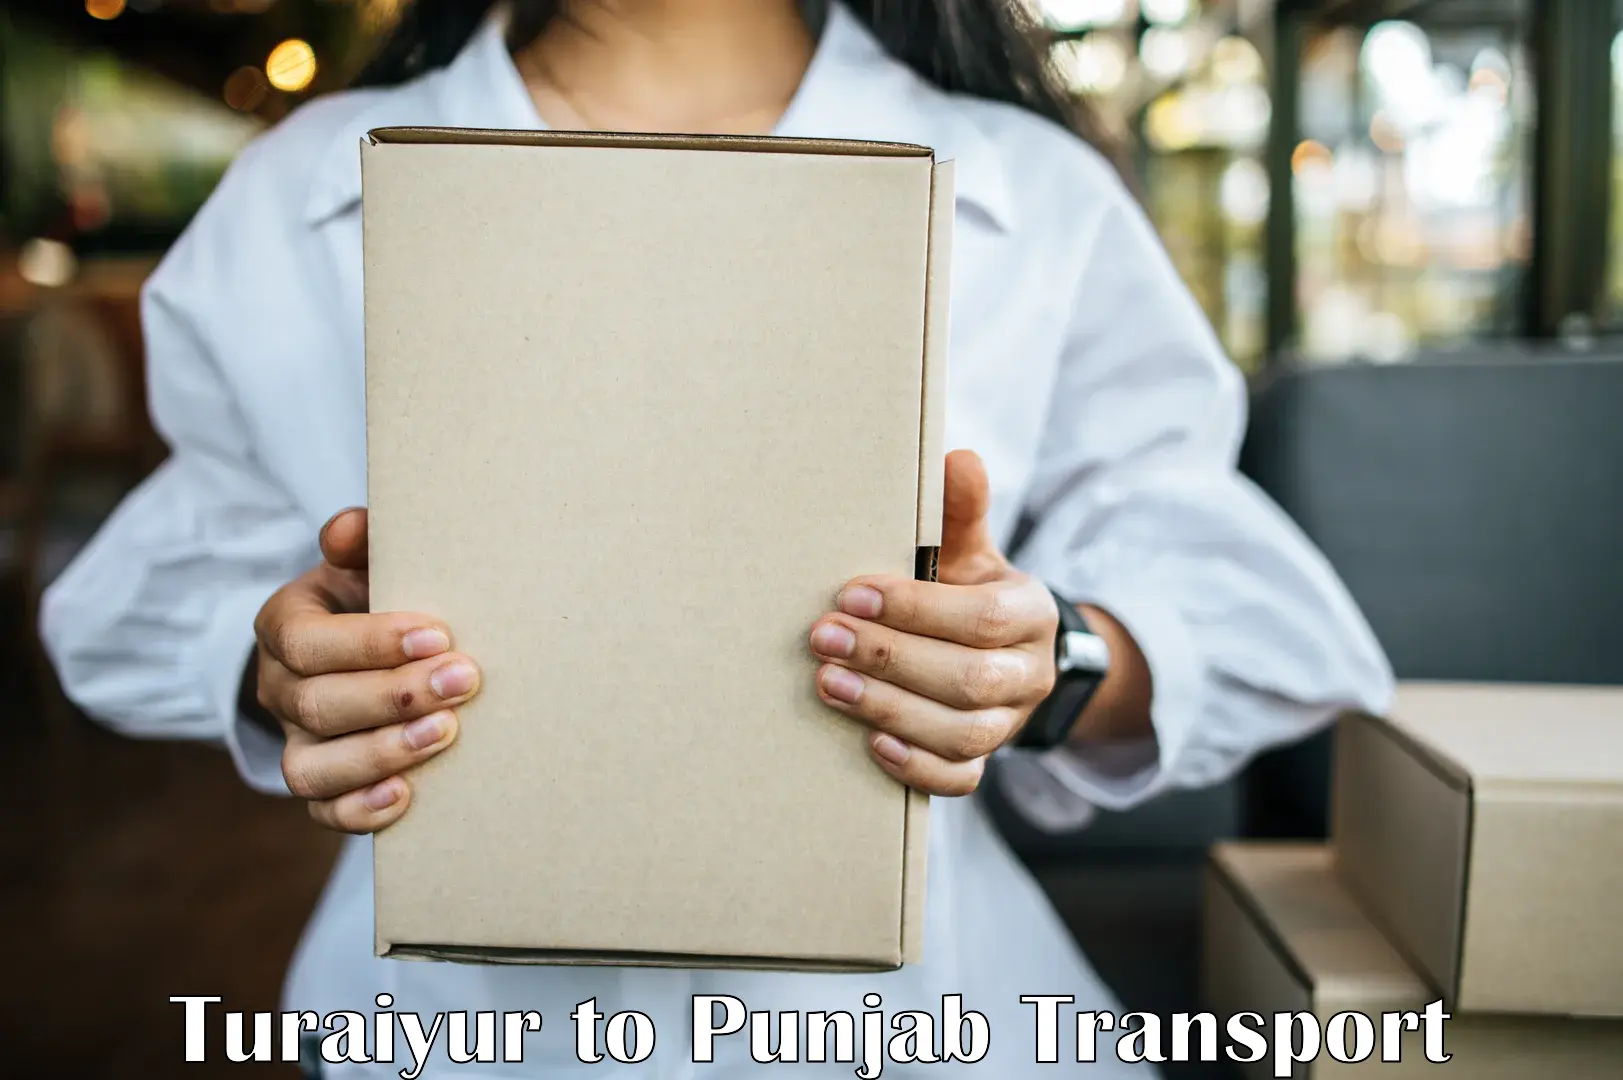 Road transport online services Turaiyur to Jalandhar